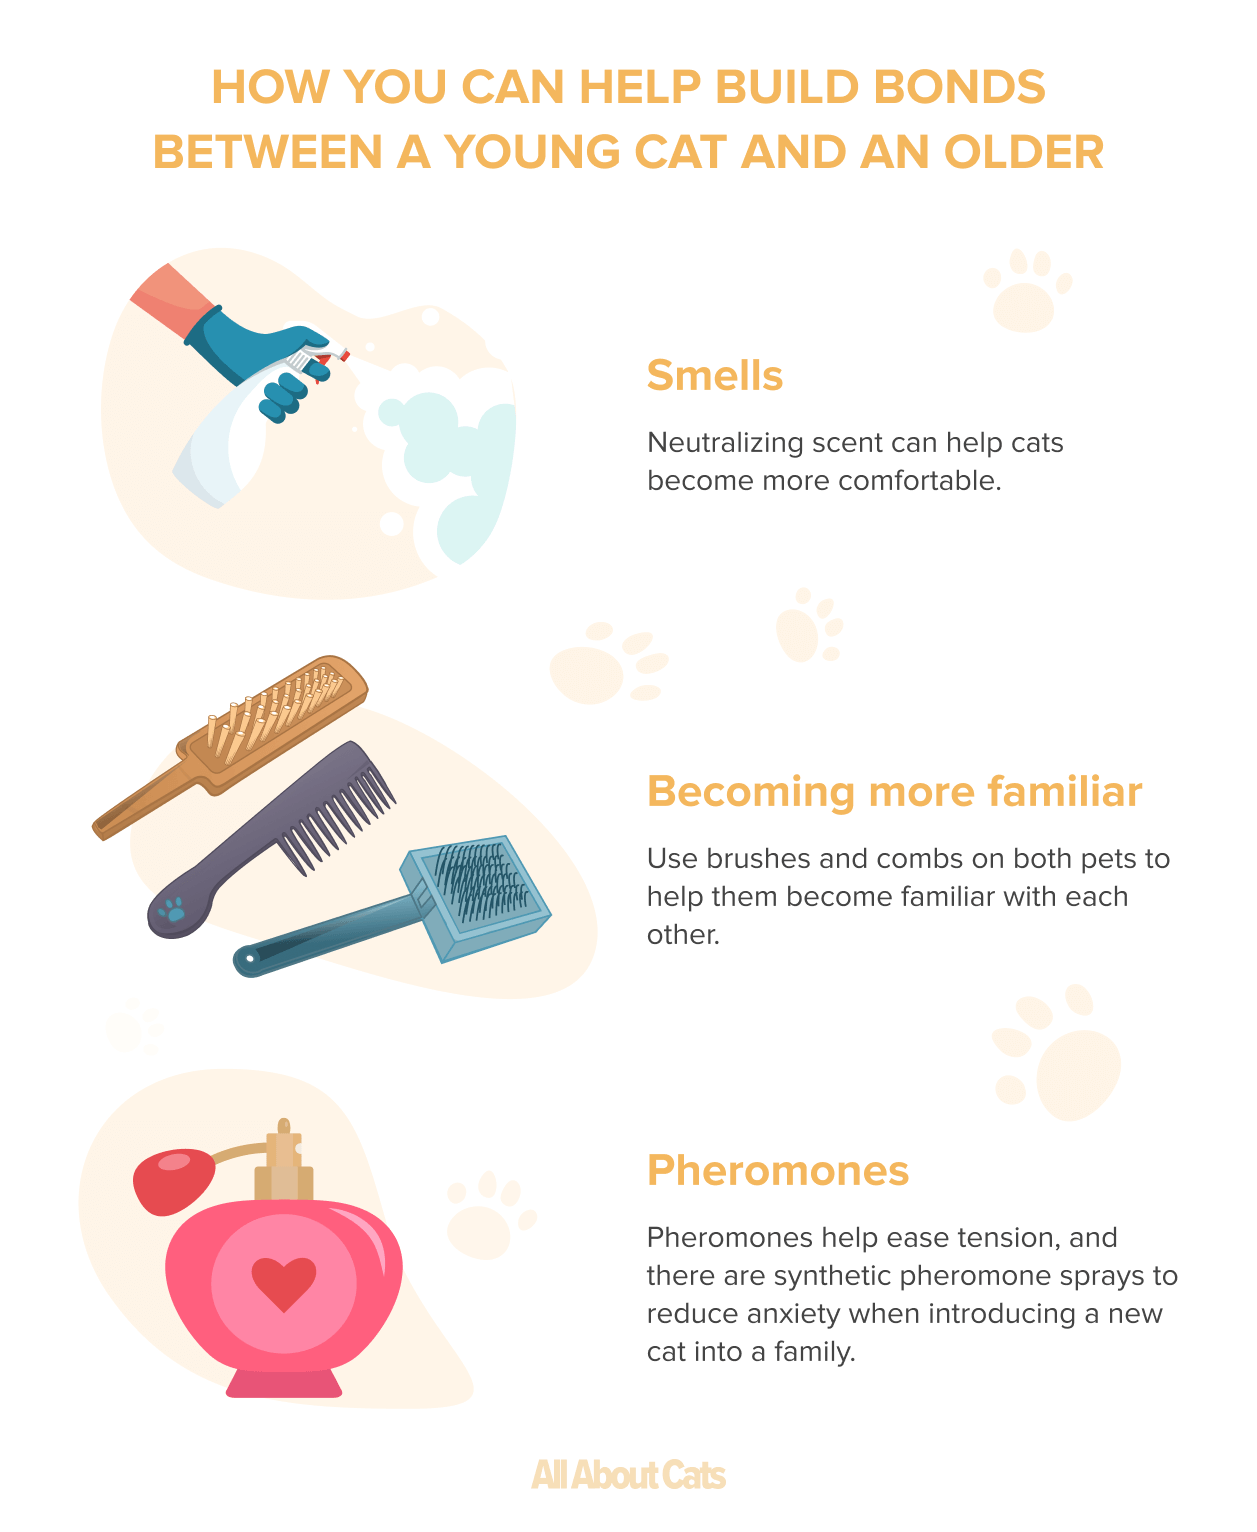 Perché i gatti si puliscono a vicenda? Motivi per cui i gatti si puliscono socialmente